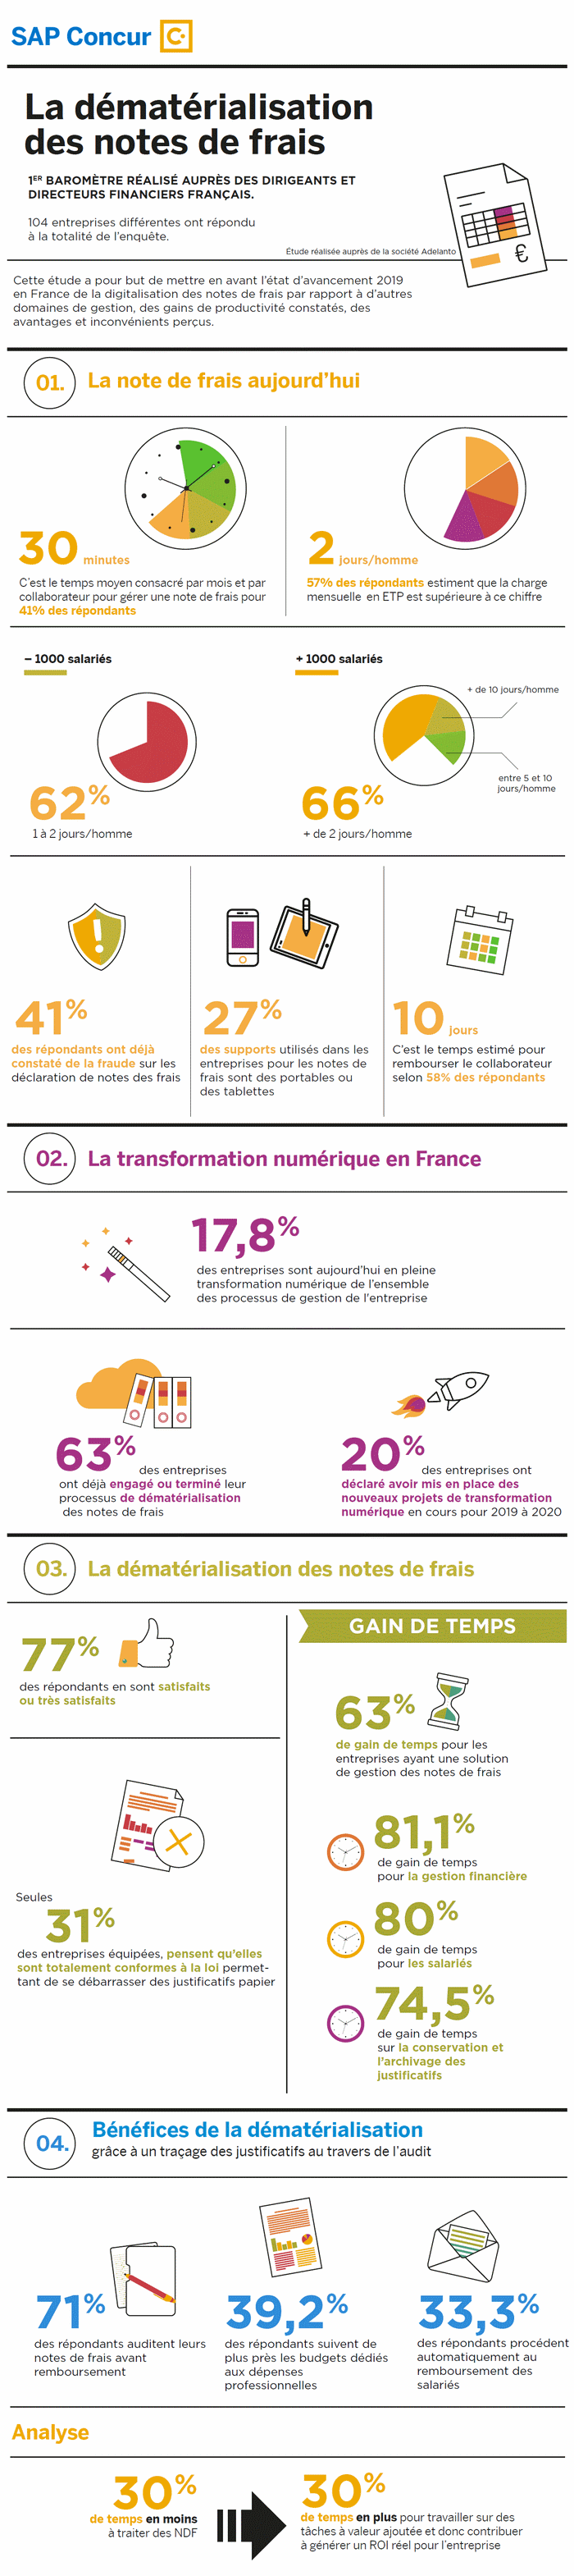 Dématérialisation des notes de frais : 63% des entreprises françaises ont déjà franchi le cap !